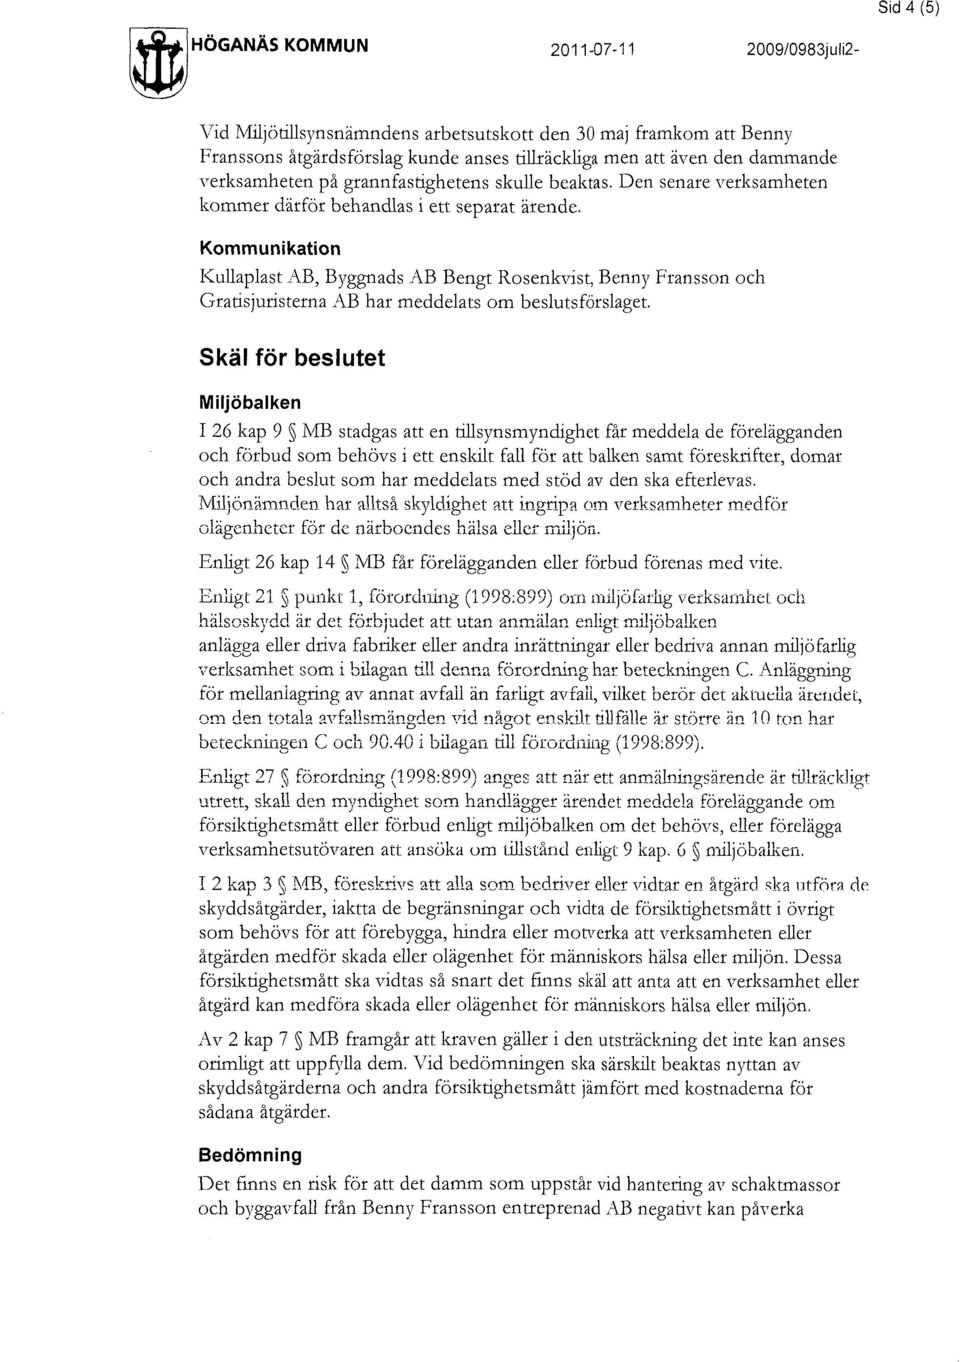 Sid 4 (5) Kommunikation I<ullaplast AB, Byggnads AB Bengt Rosenkvist, Benny Fransson och Gratisjuristerna AB har meddelats om beslutsförslaget.